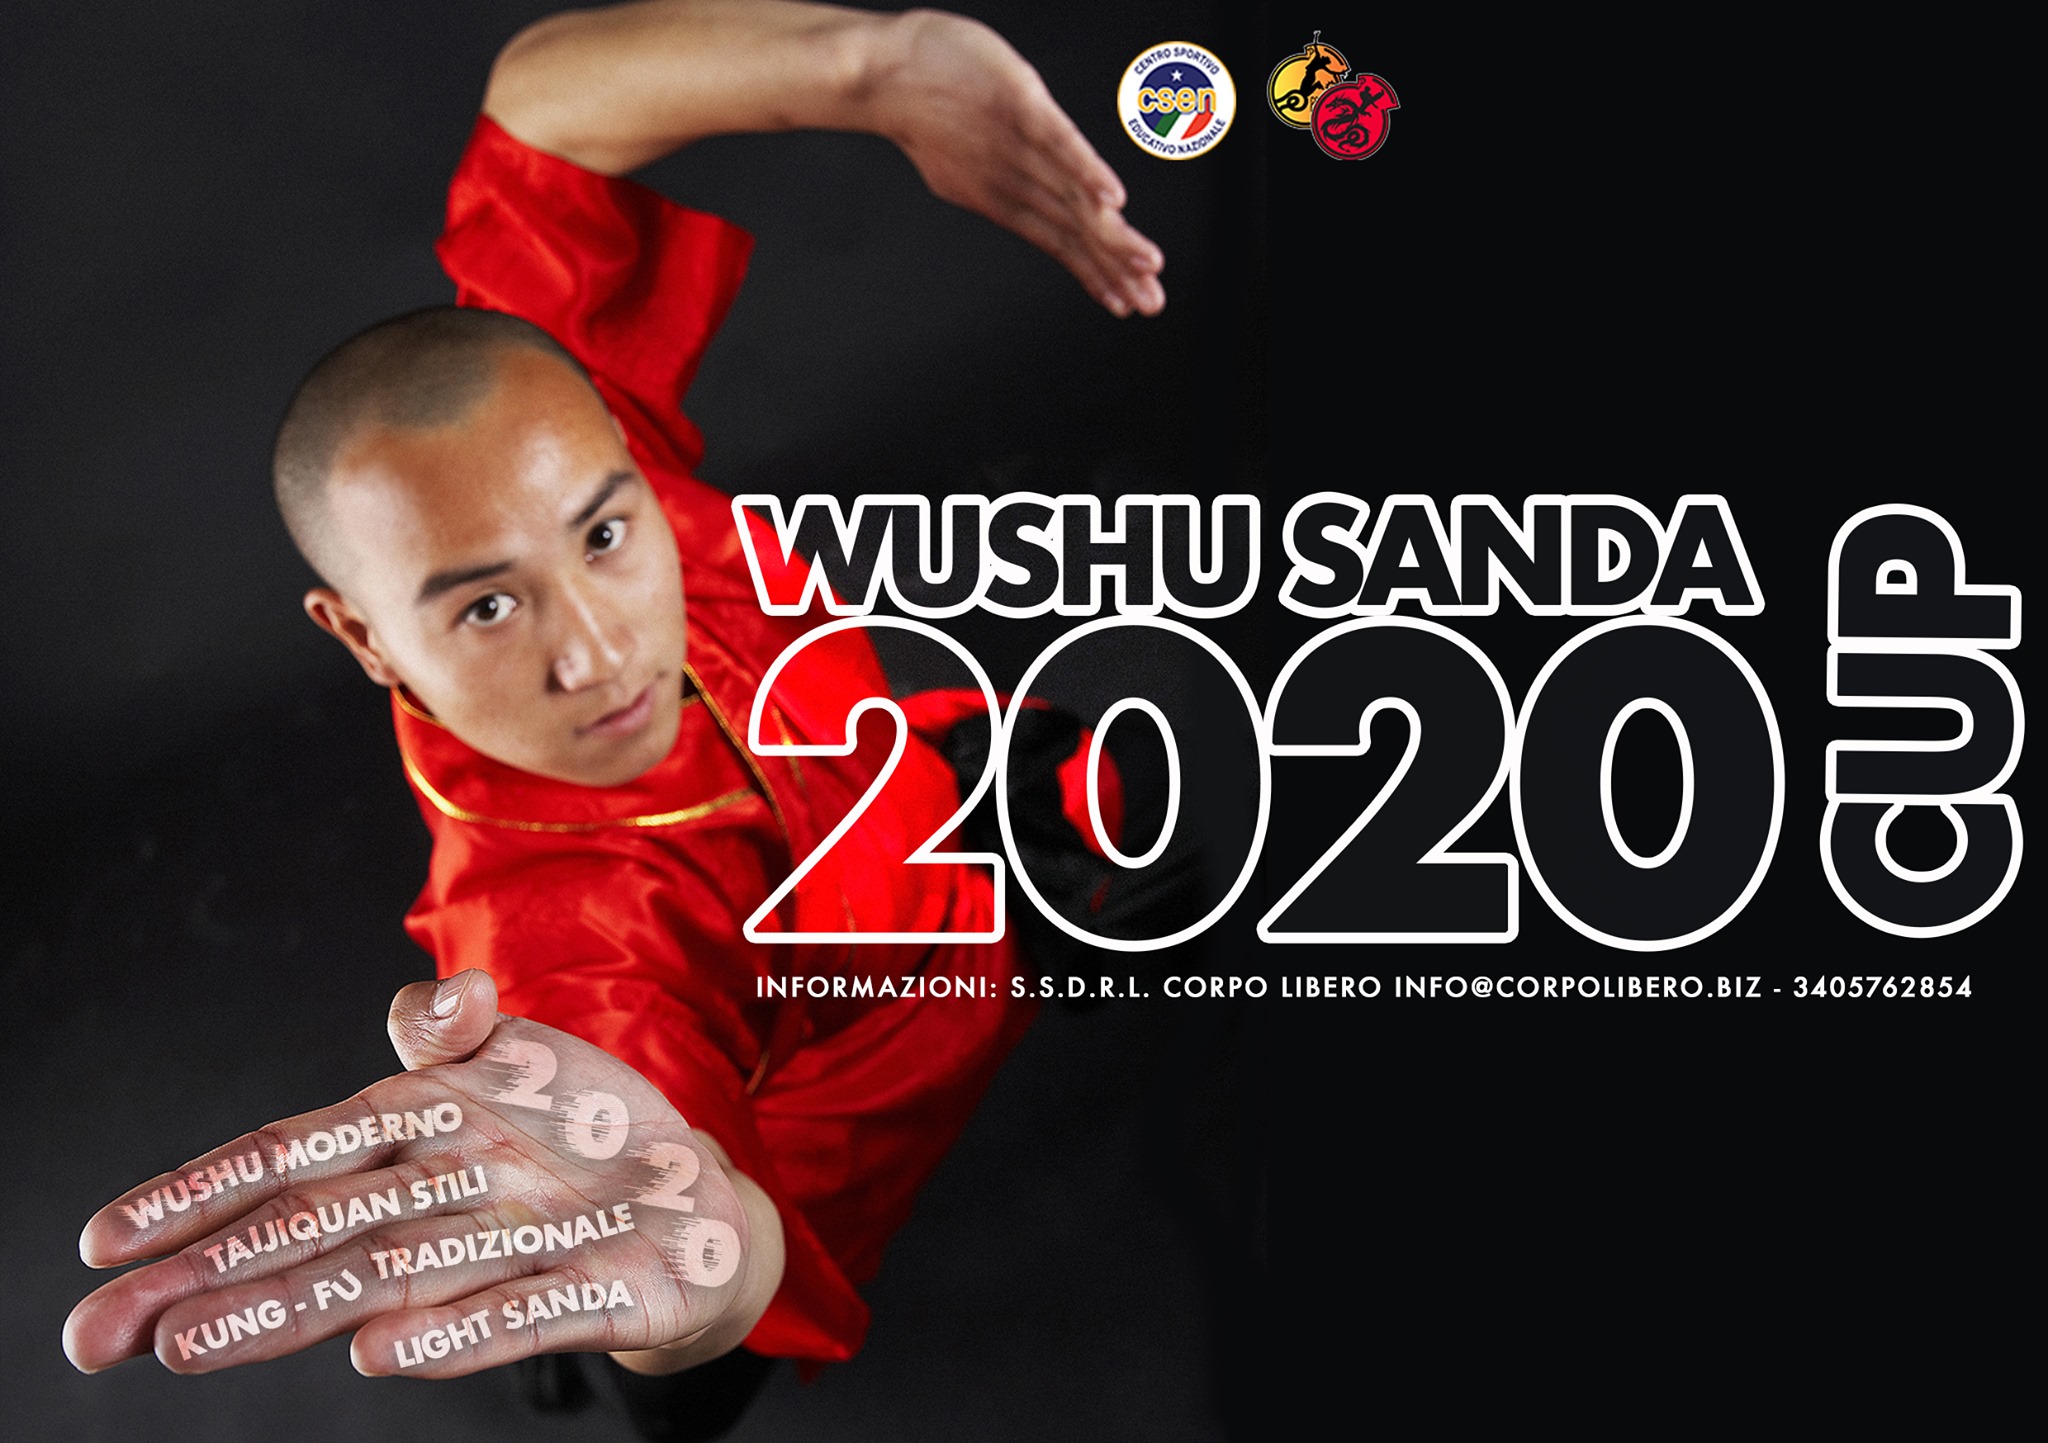 29/02 – 01/03 marzo 2020 10° Edizione Wushu Sanda Cup